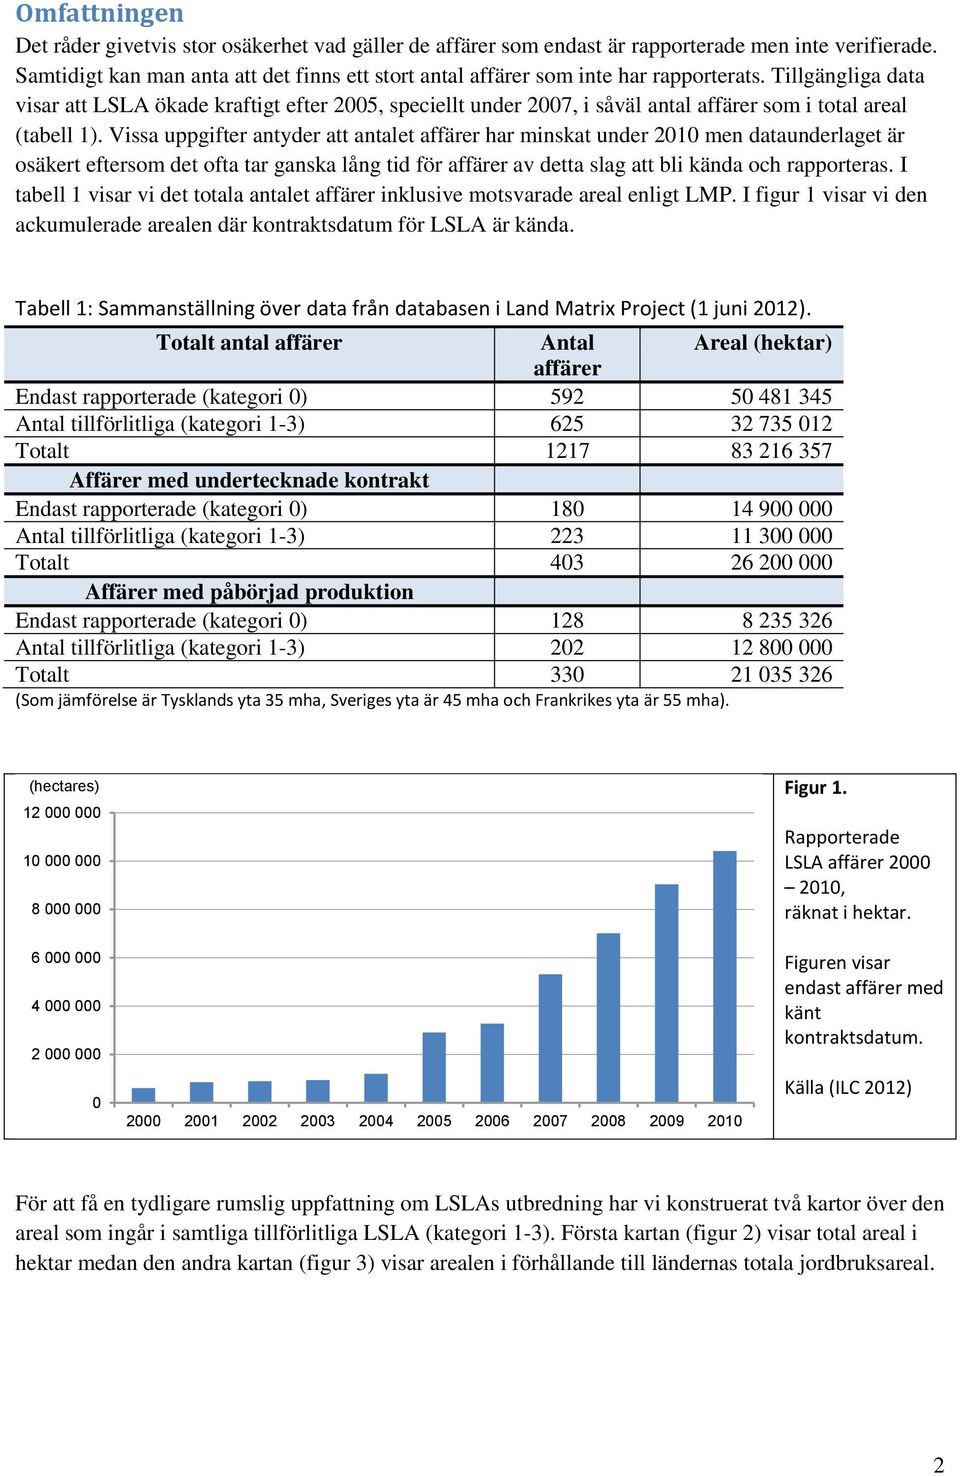 Tillgängliga data visar att LSLA ökade kraftigt efter 2005, speciellt under 2007, i såväl antal affärer som i total areal (tabell 1).